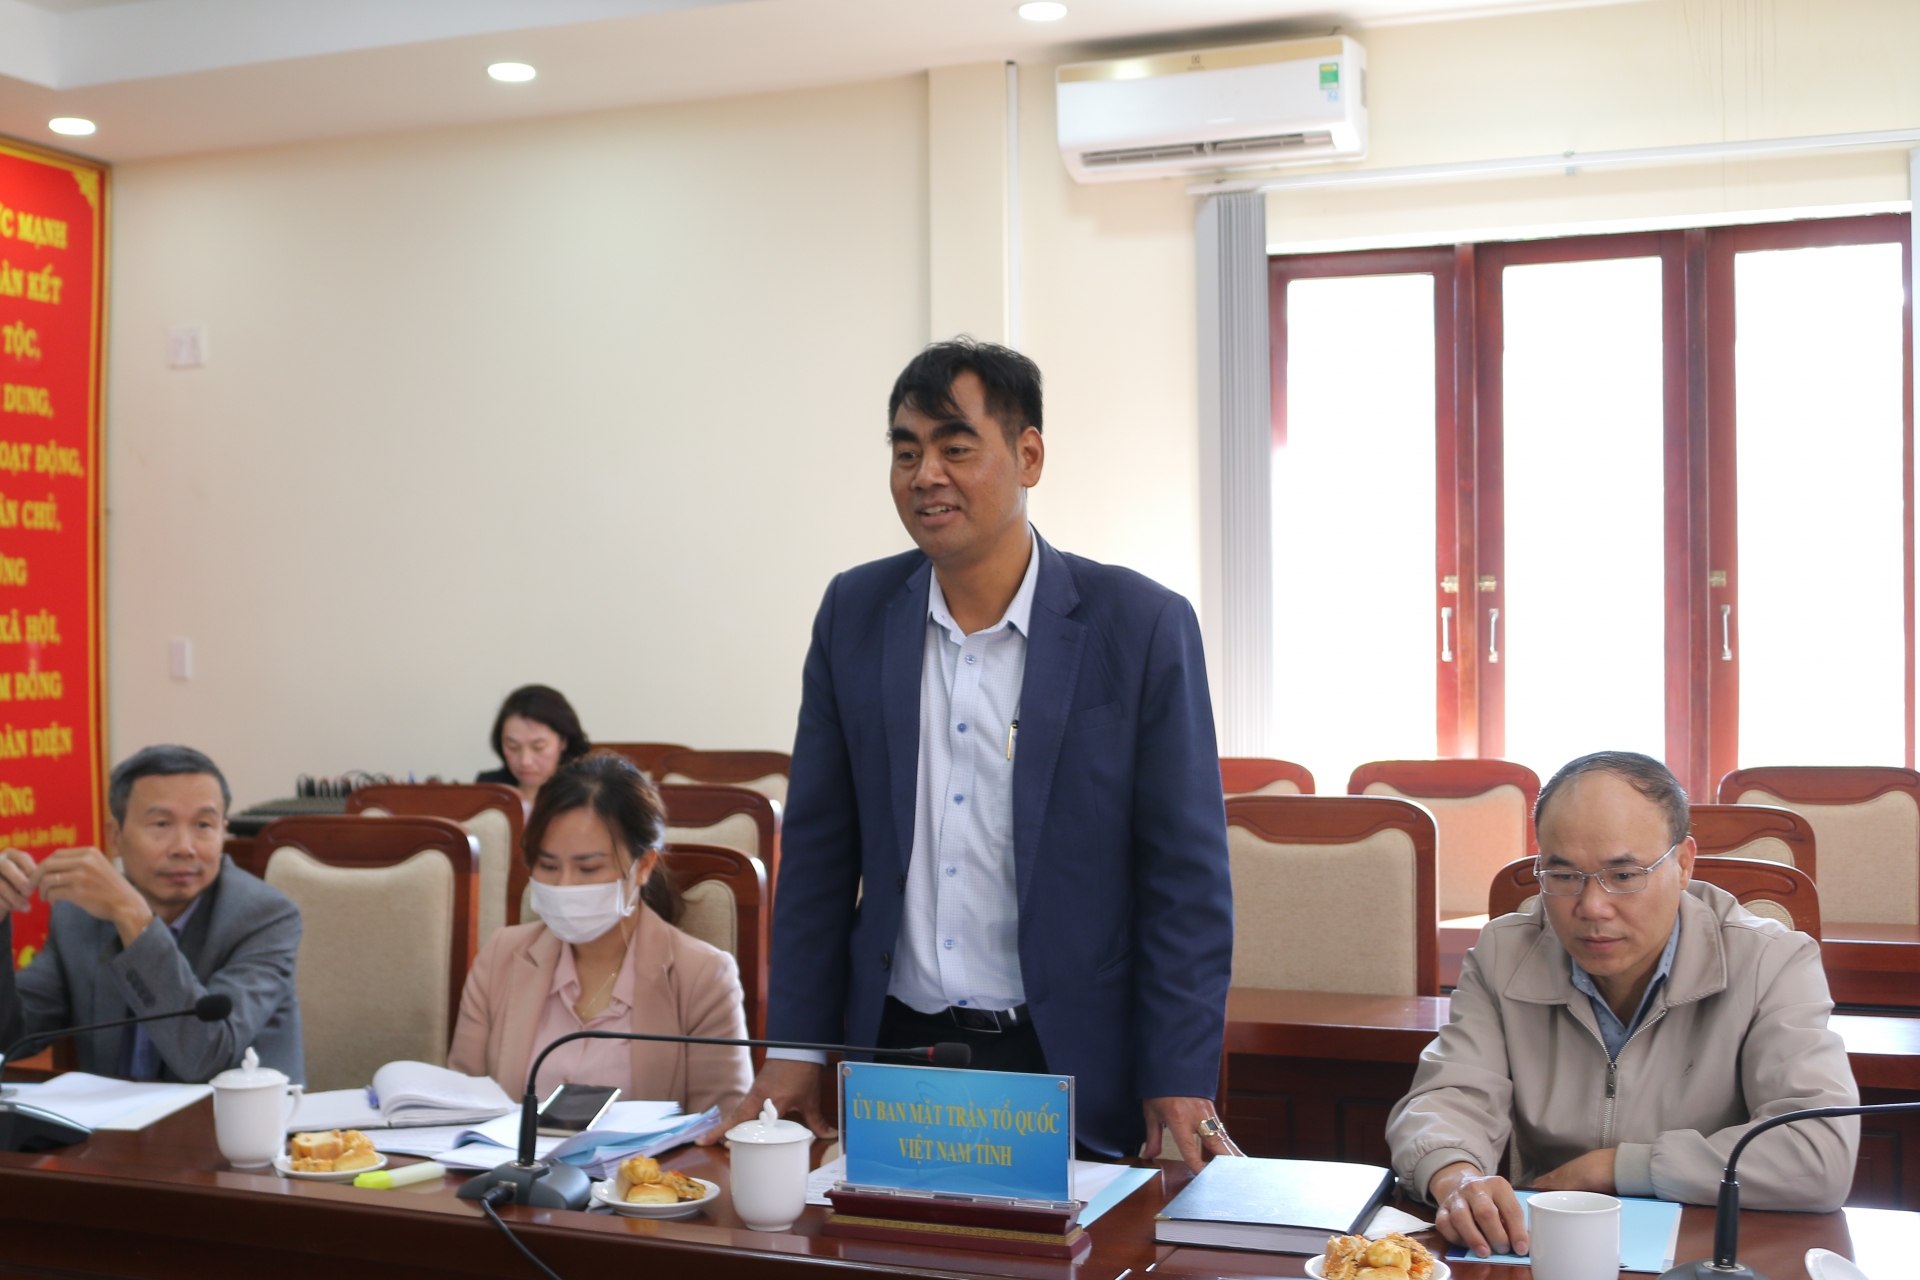 Đại diện Ủy ban MTTQ Việt Nam tỉnh góp ý thêm về các hoạt động chào mừng kỷ niệm 70 năm chiến thắng Điện Biên Phủ